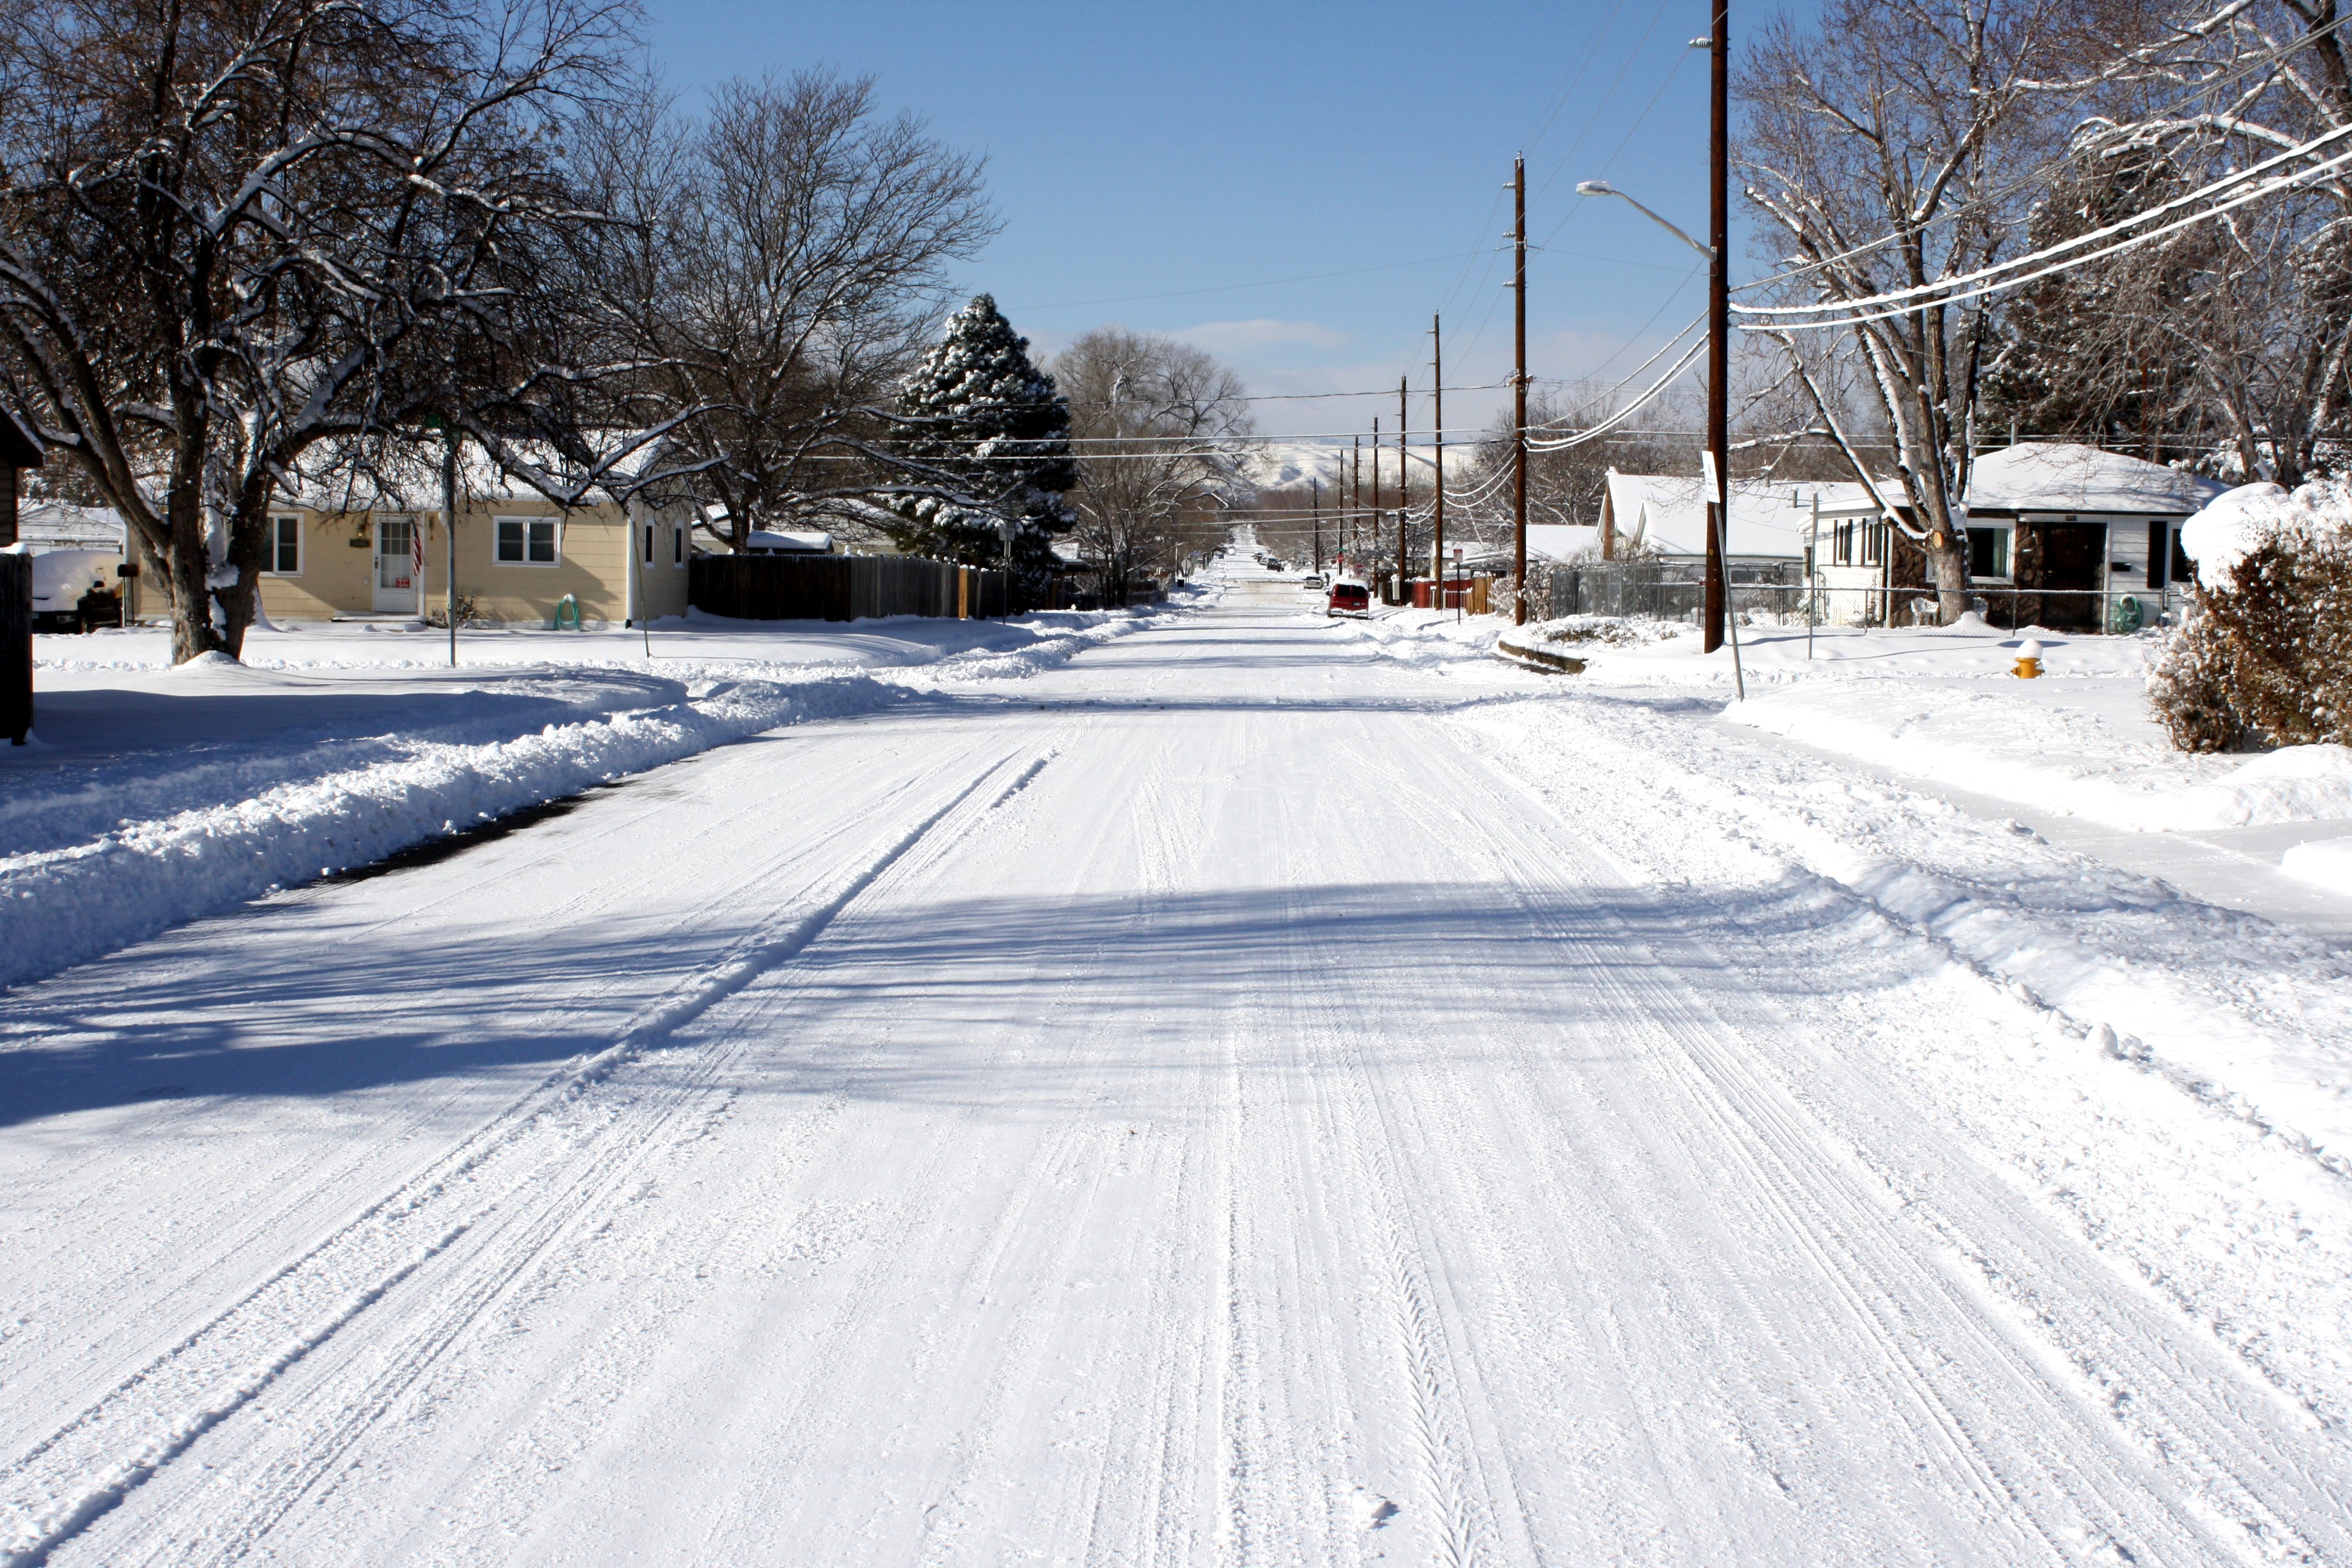 Snowy street photo